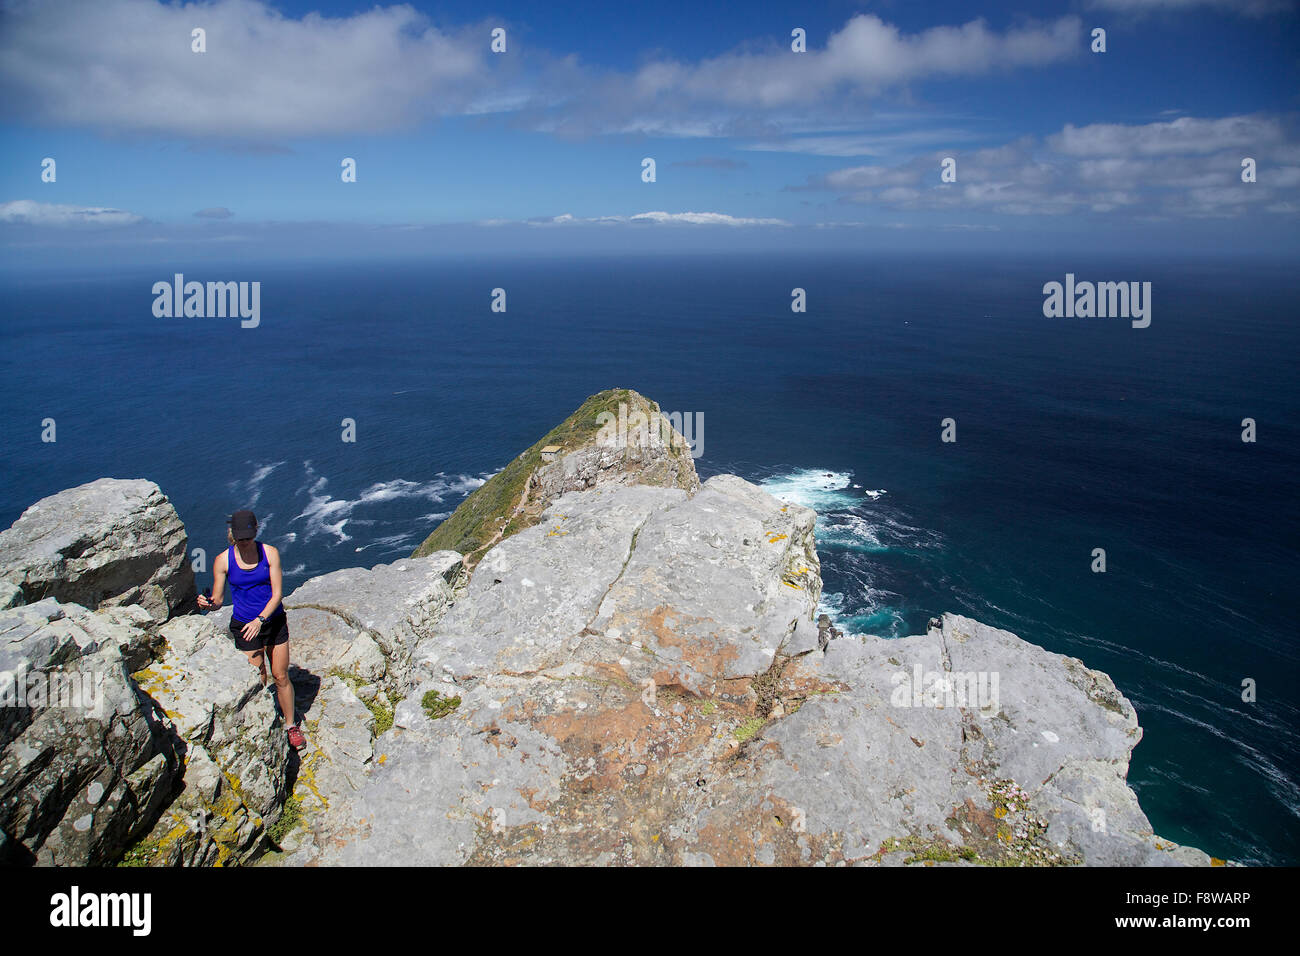 Une jeune fille debout sur une falaise à Cap de Bonne Espérance avec l'océan Atlantique et le ciel en arrière-plan Banque D'Images